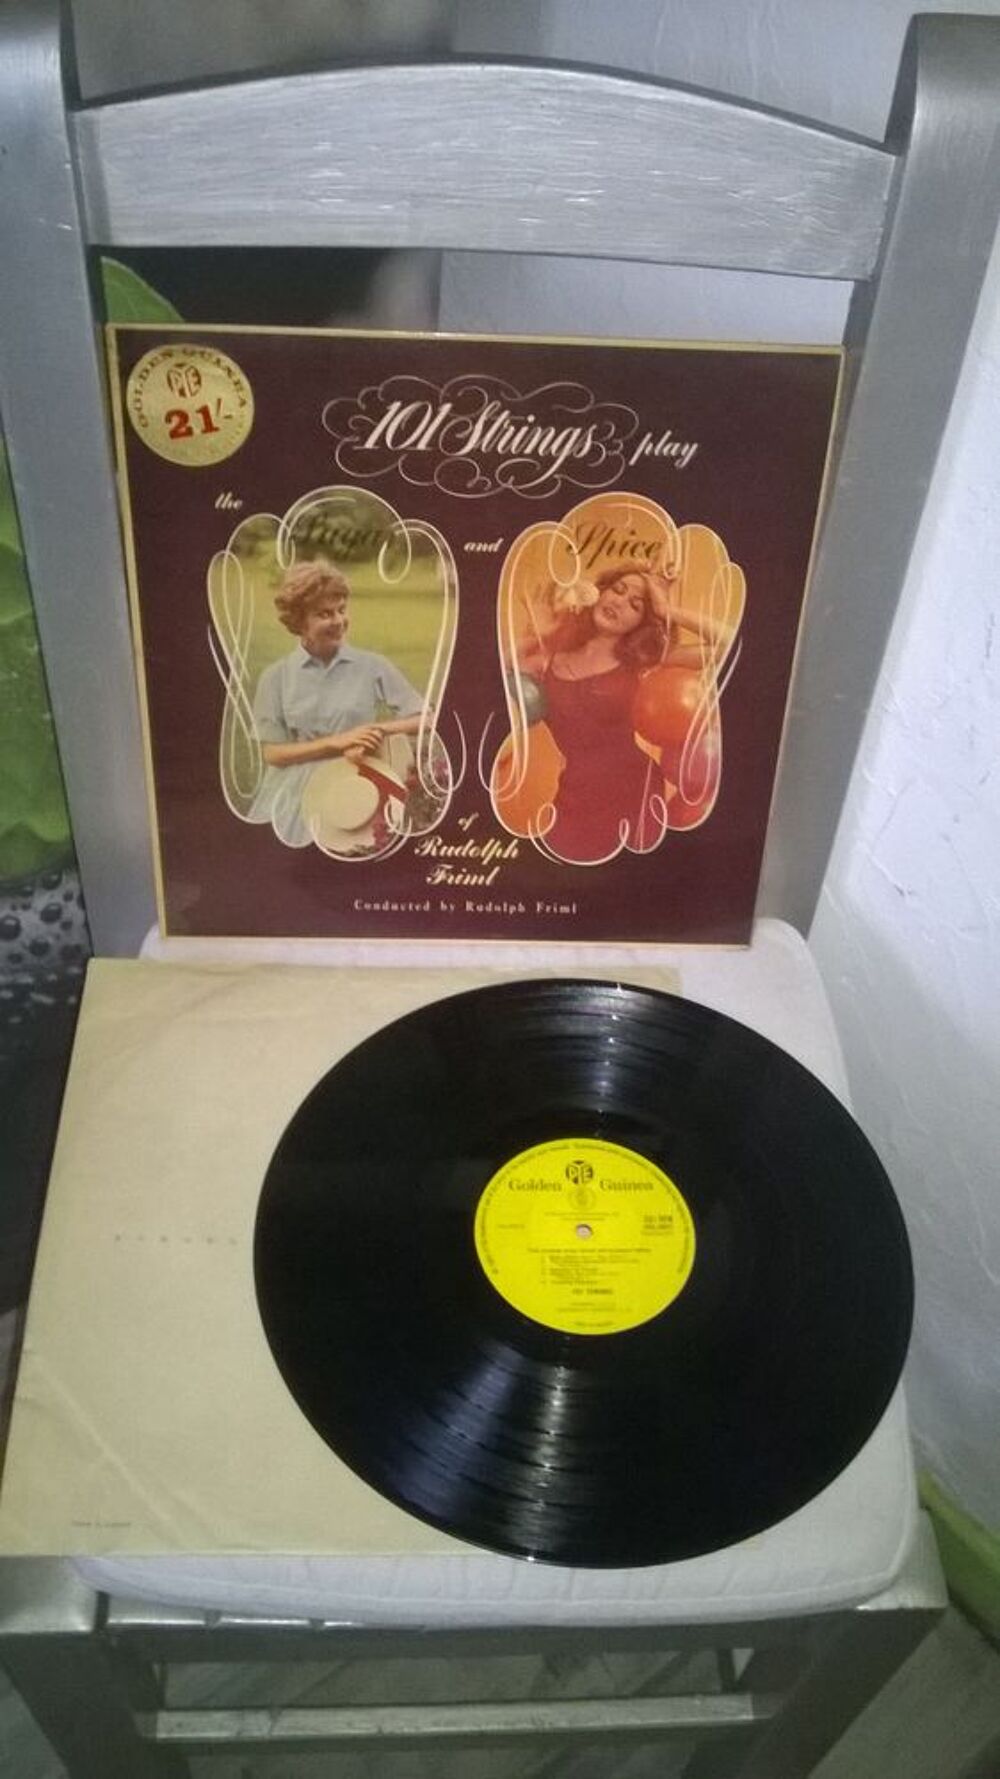 Vinyle 101 Strings, Rudolf Friml
101 Strings Play The Sugar CD et vinyles